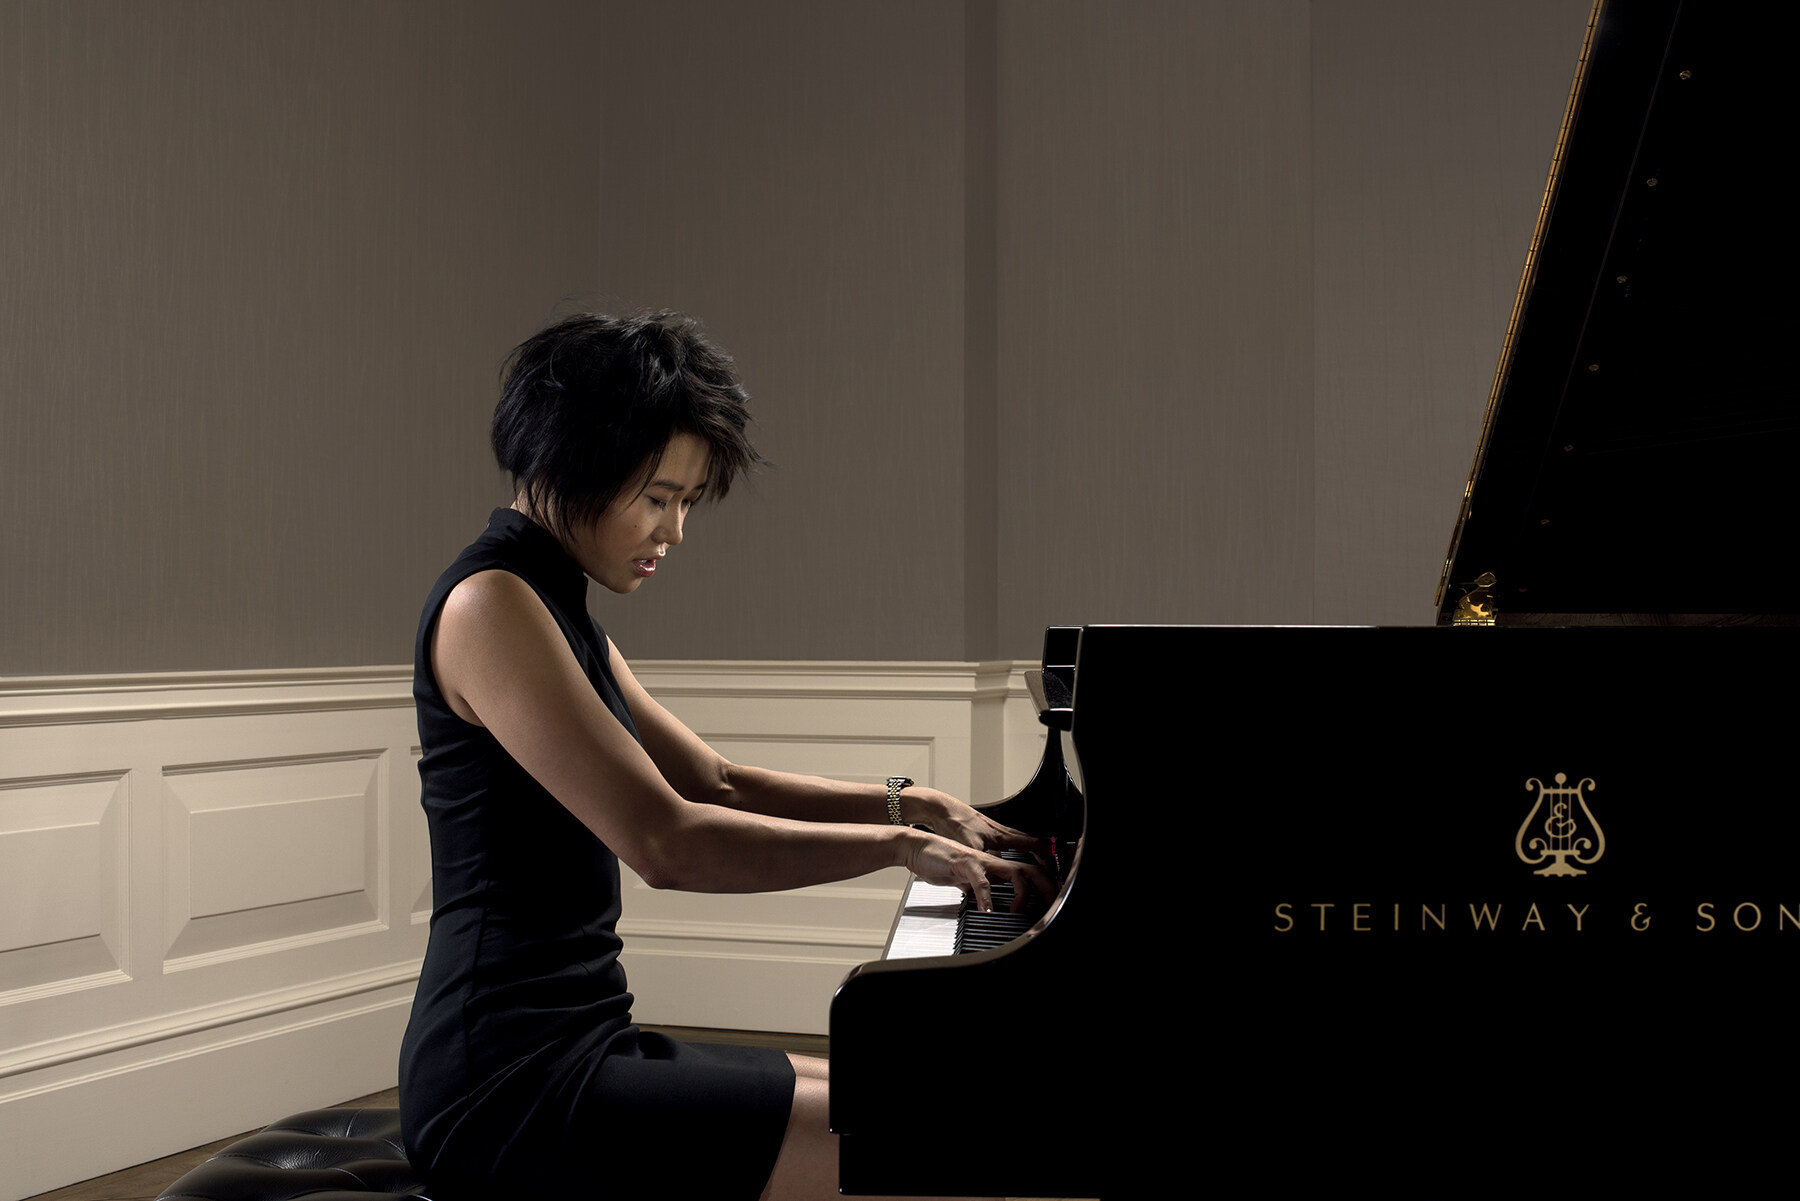 以高超技巧、恢宏而硬朗的演奏風格風靡全球的天才鋼琴家王羽佳自2009